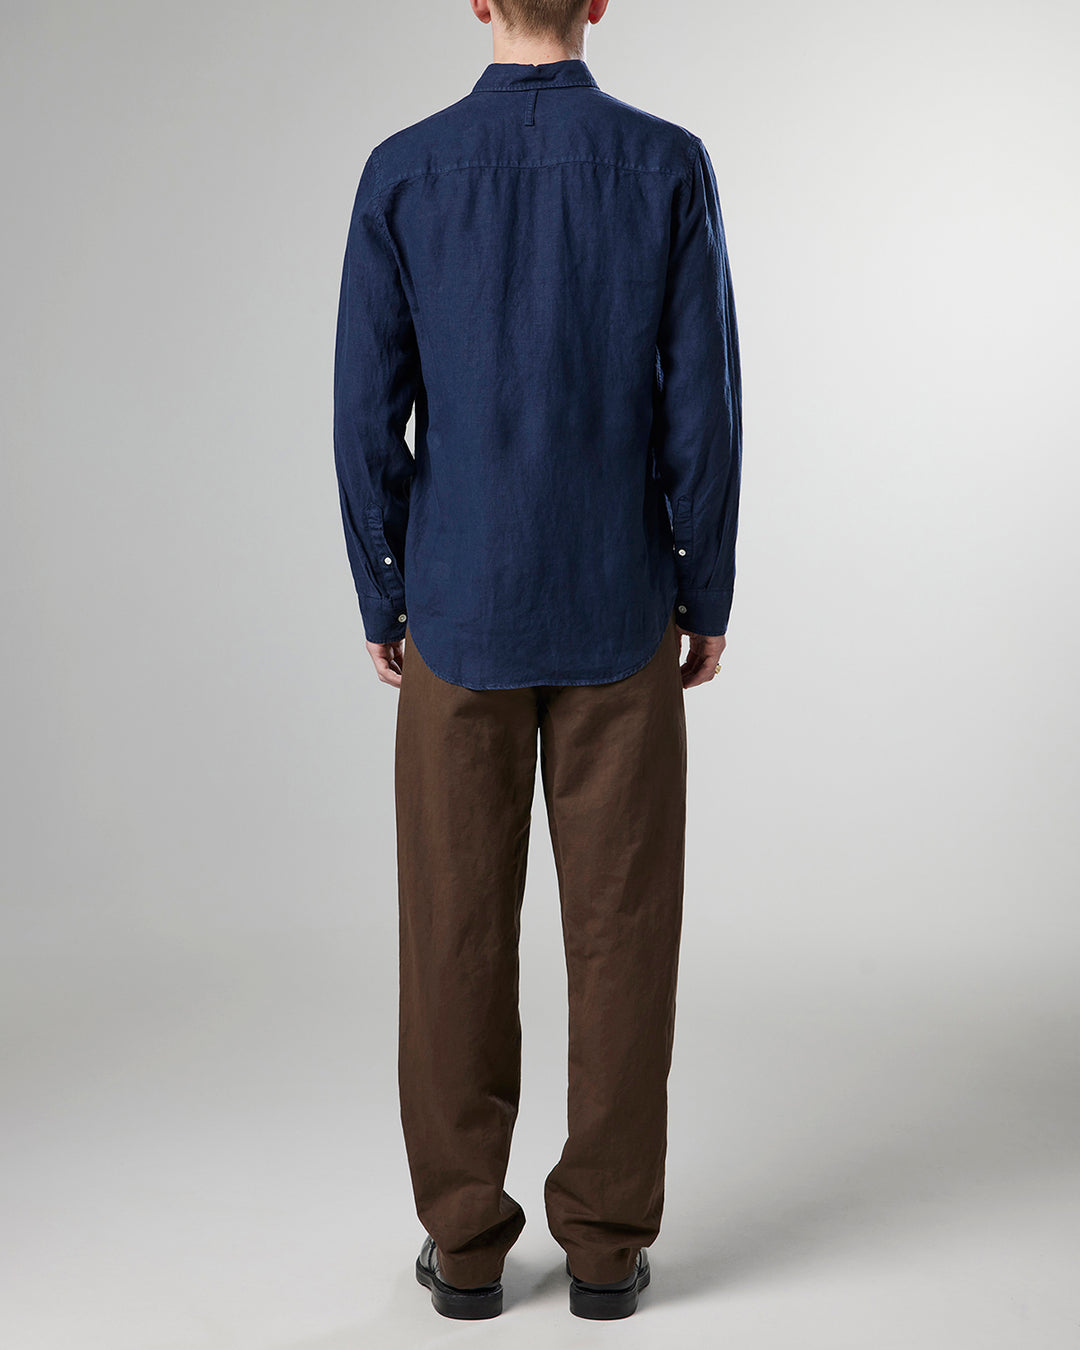 NN07 - Arne BD 5706 Linen Shirt in Navy Blue | Buster McGee